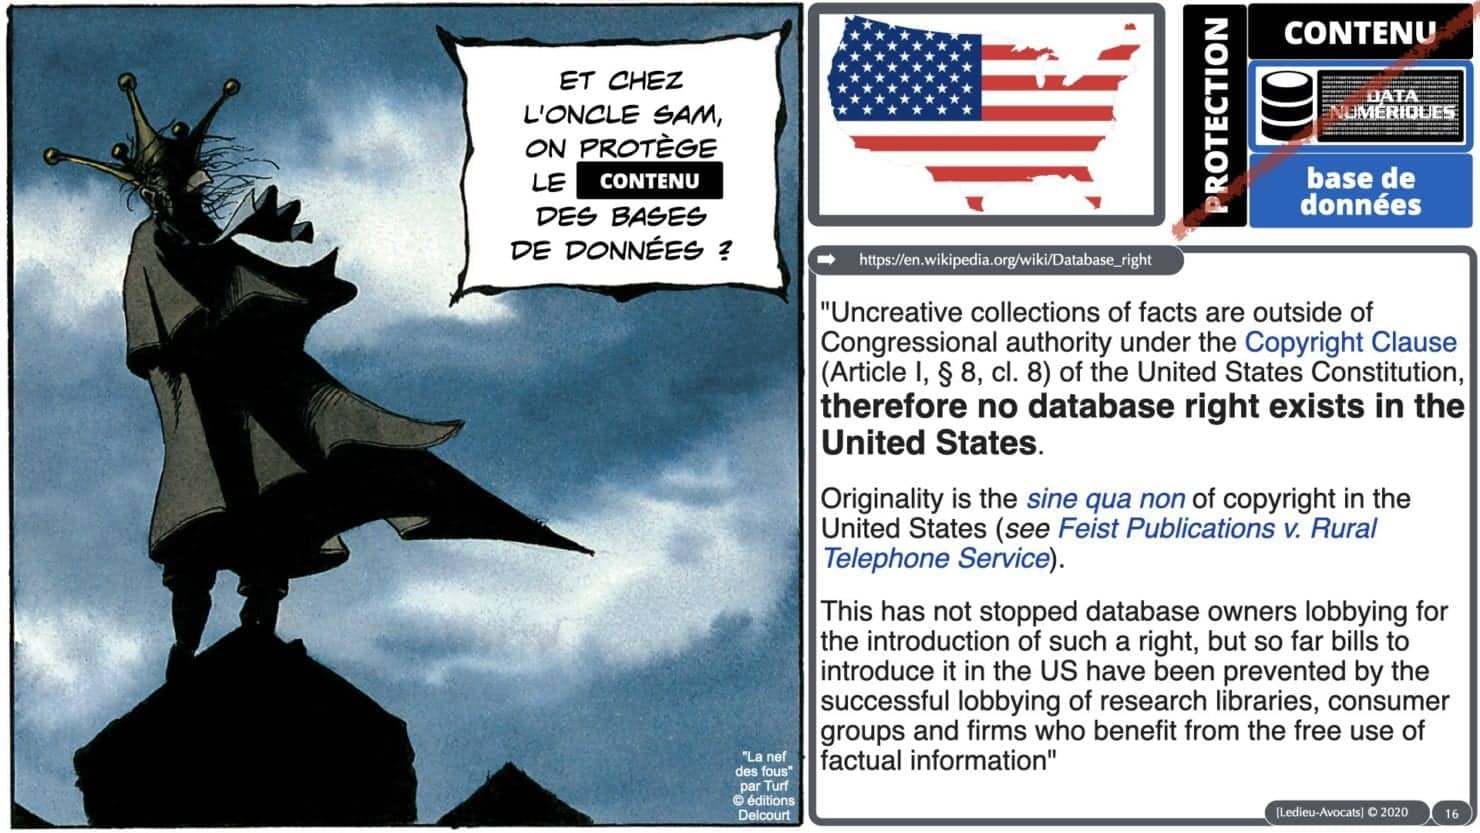 bases de données UE vs USA